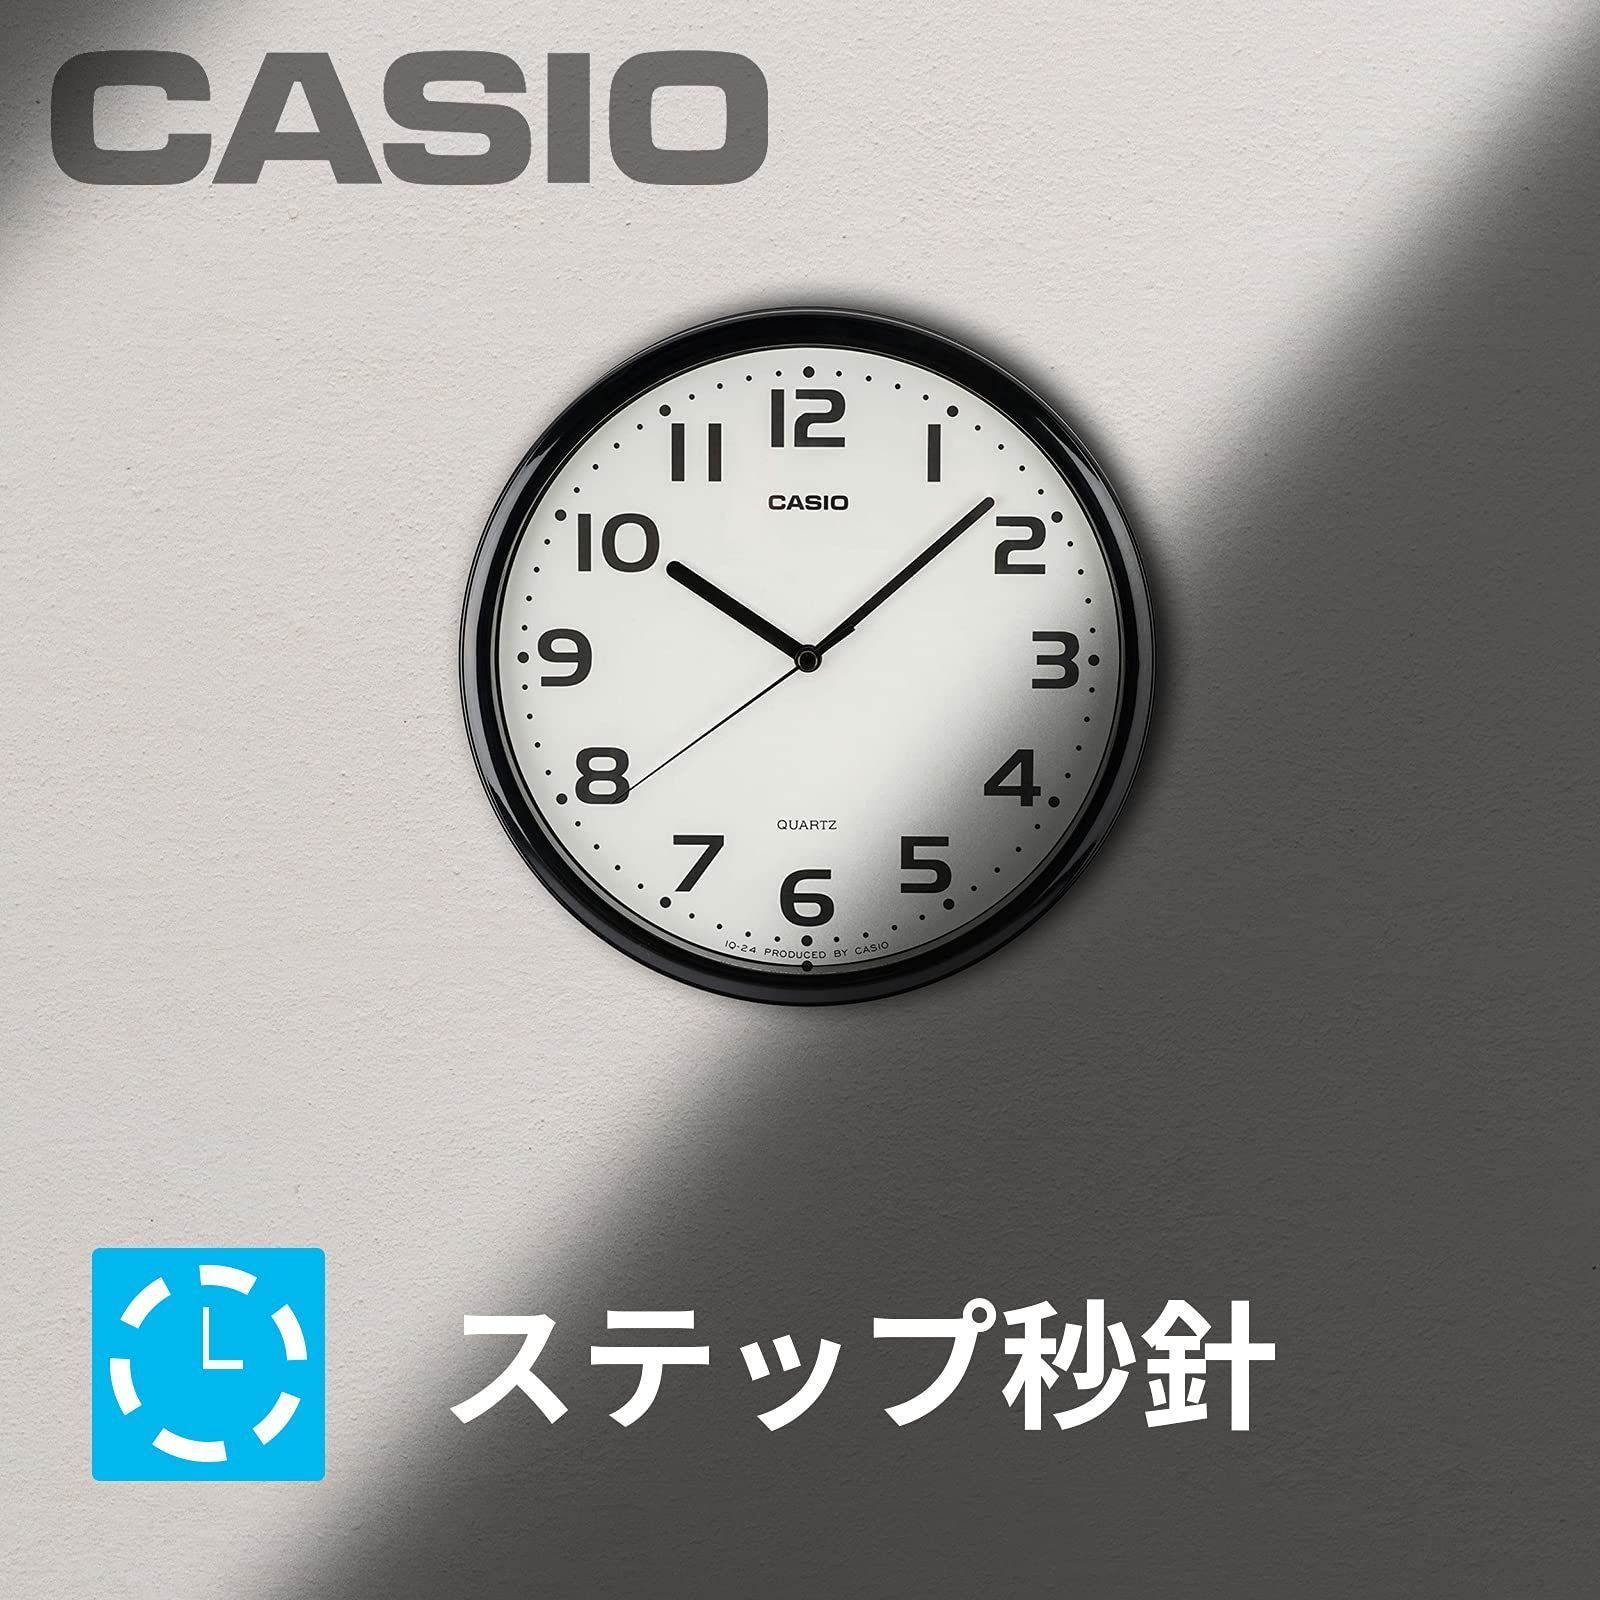 メルカリShops - 【カラー: ブラック】CASIO(カシオ) 掛け時計 ブラック 直径25cm ア